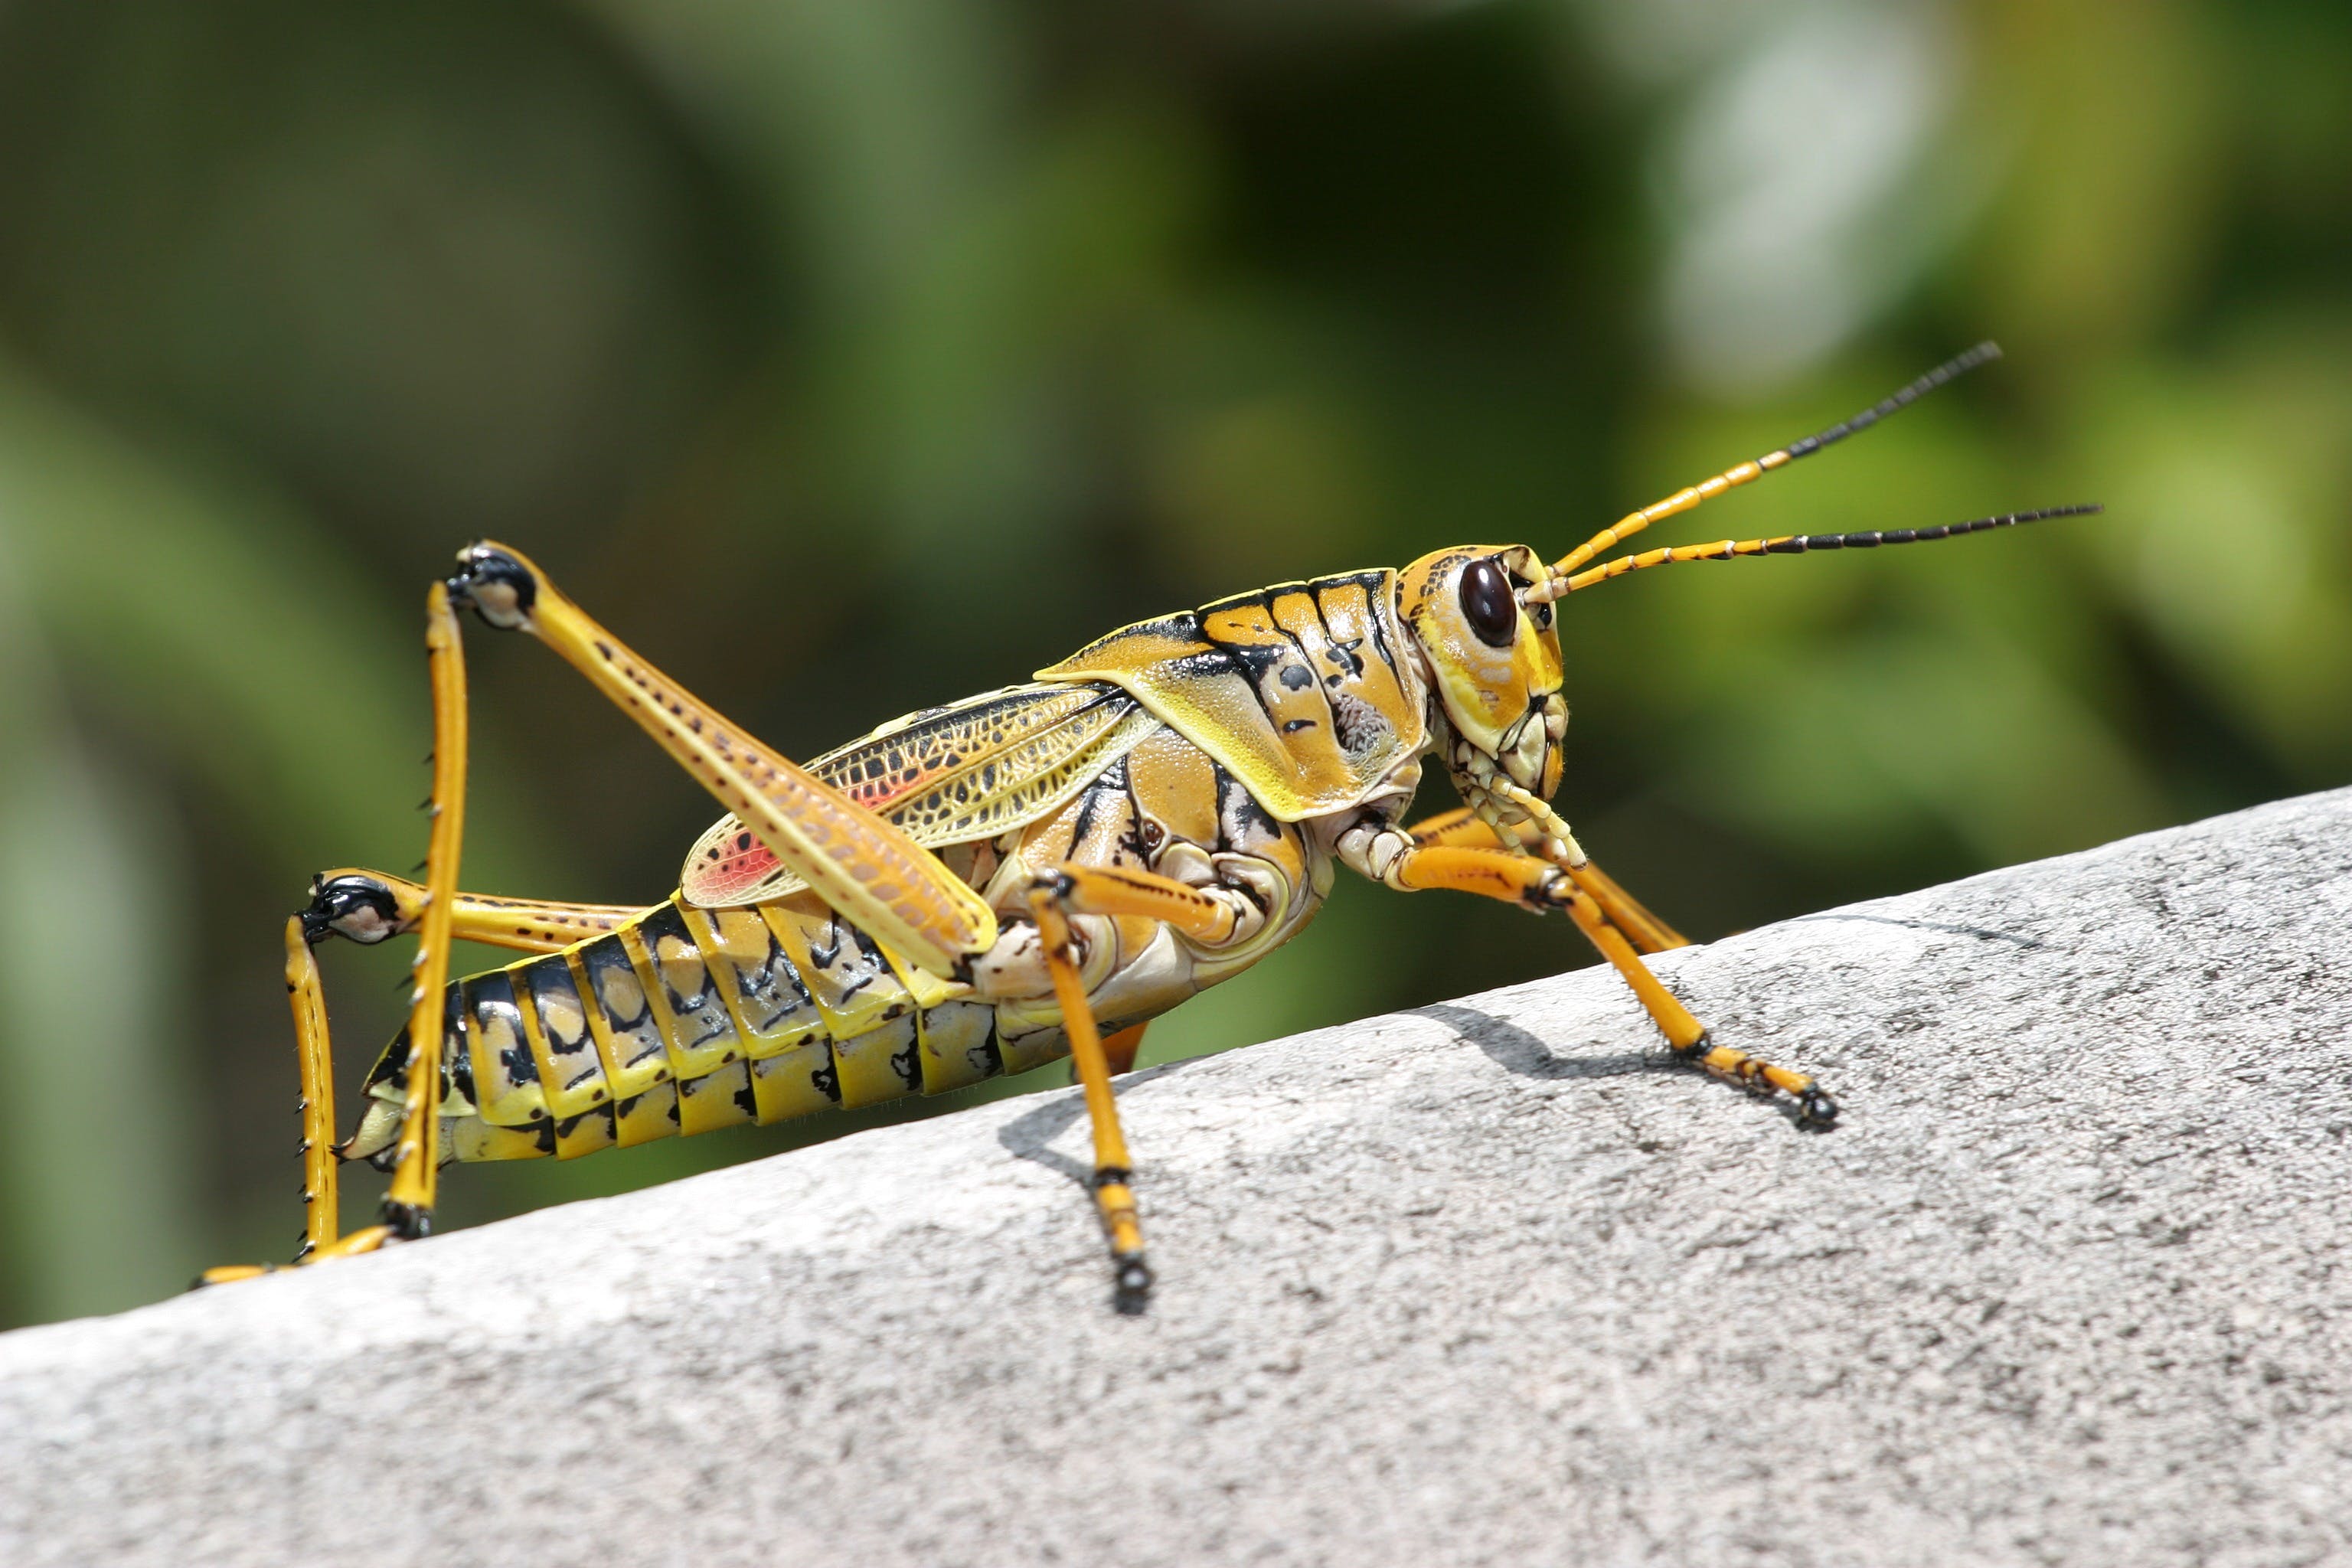 A closeup photo of a grasshopper. | Source: Pexels